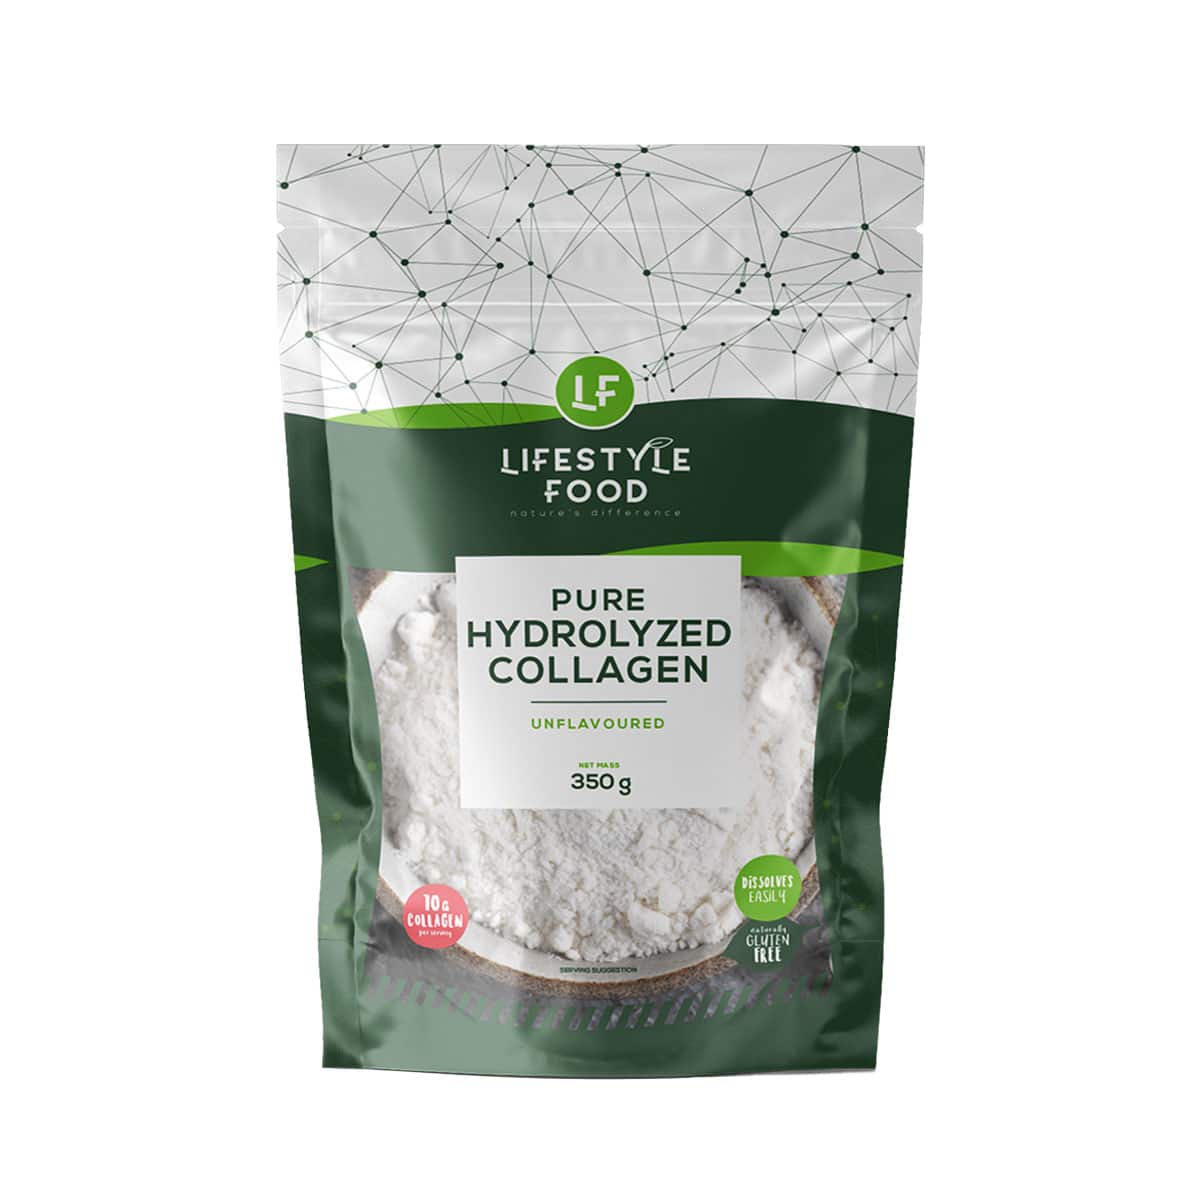 Lifestyle Food Hydrolyzed Collagen Powder - 350g